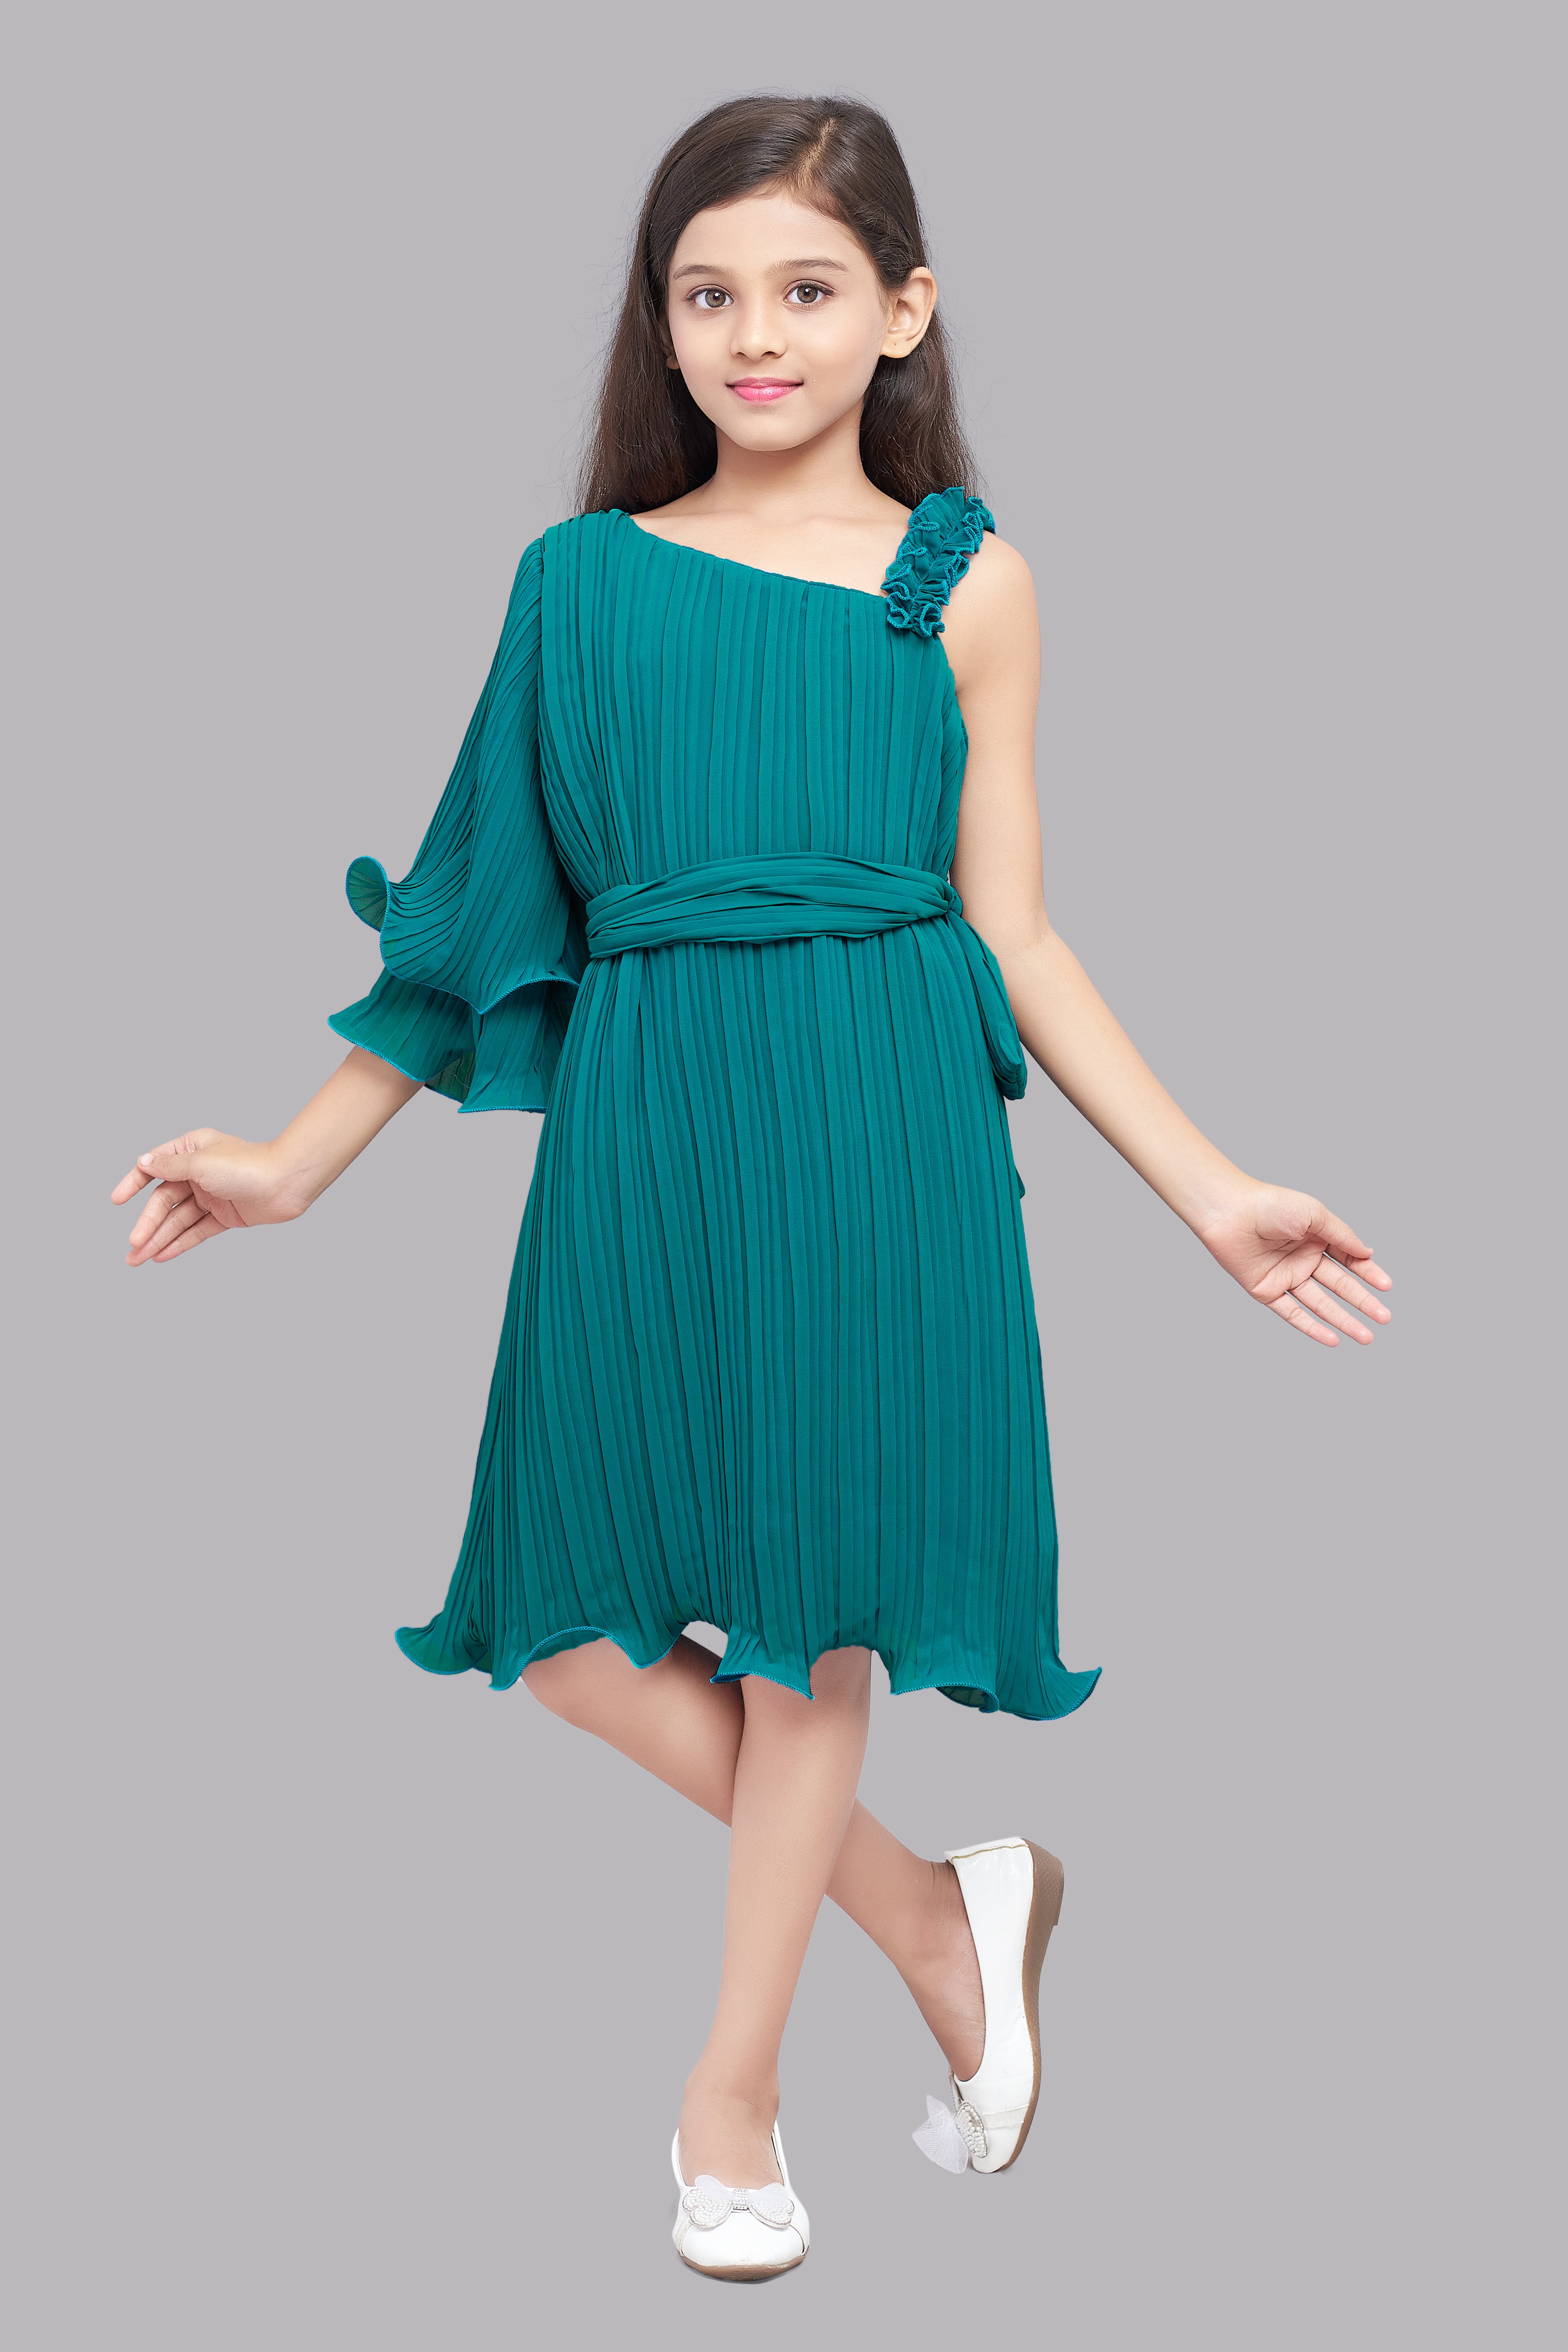 Off Shoulder Dress  Buy Off Shoulder Dresses Online  Myntra